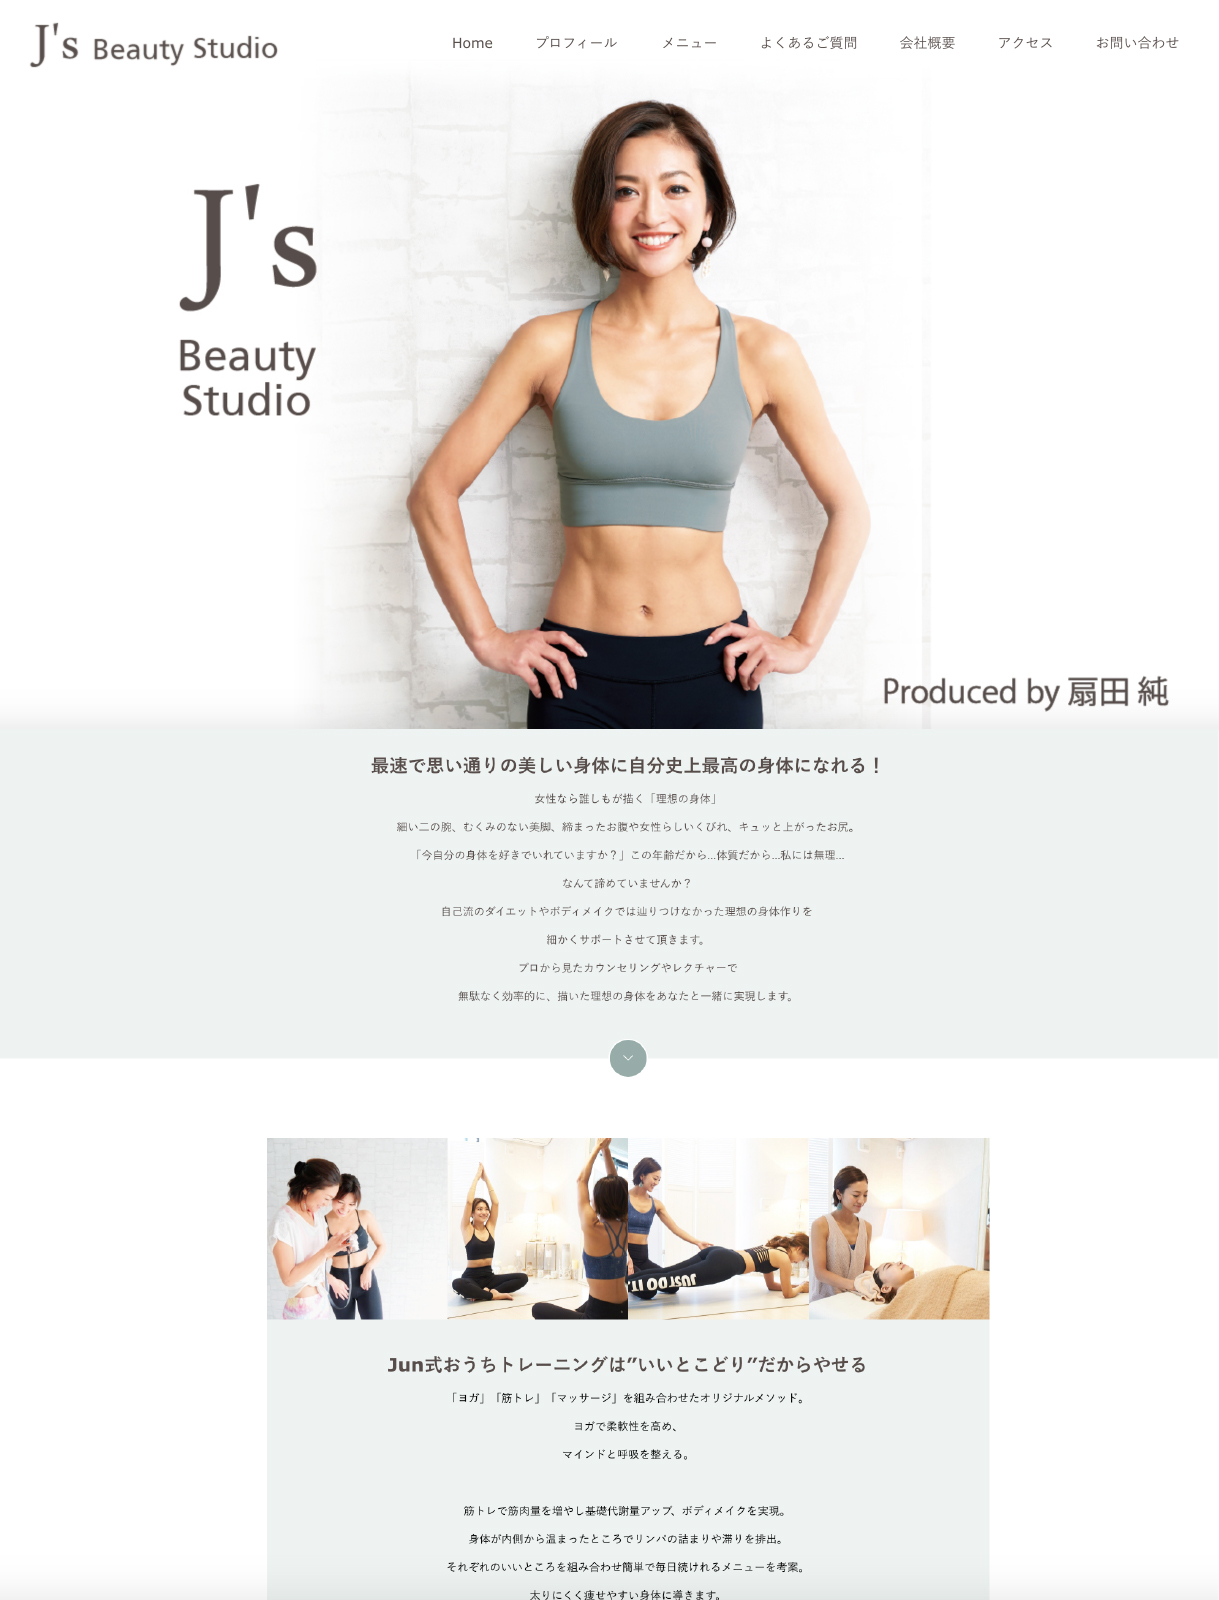 東京・恵比寿トレーニングスタジオ「J's Beauty」様 ホームページ作成